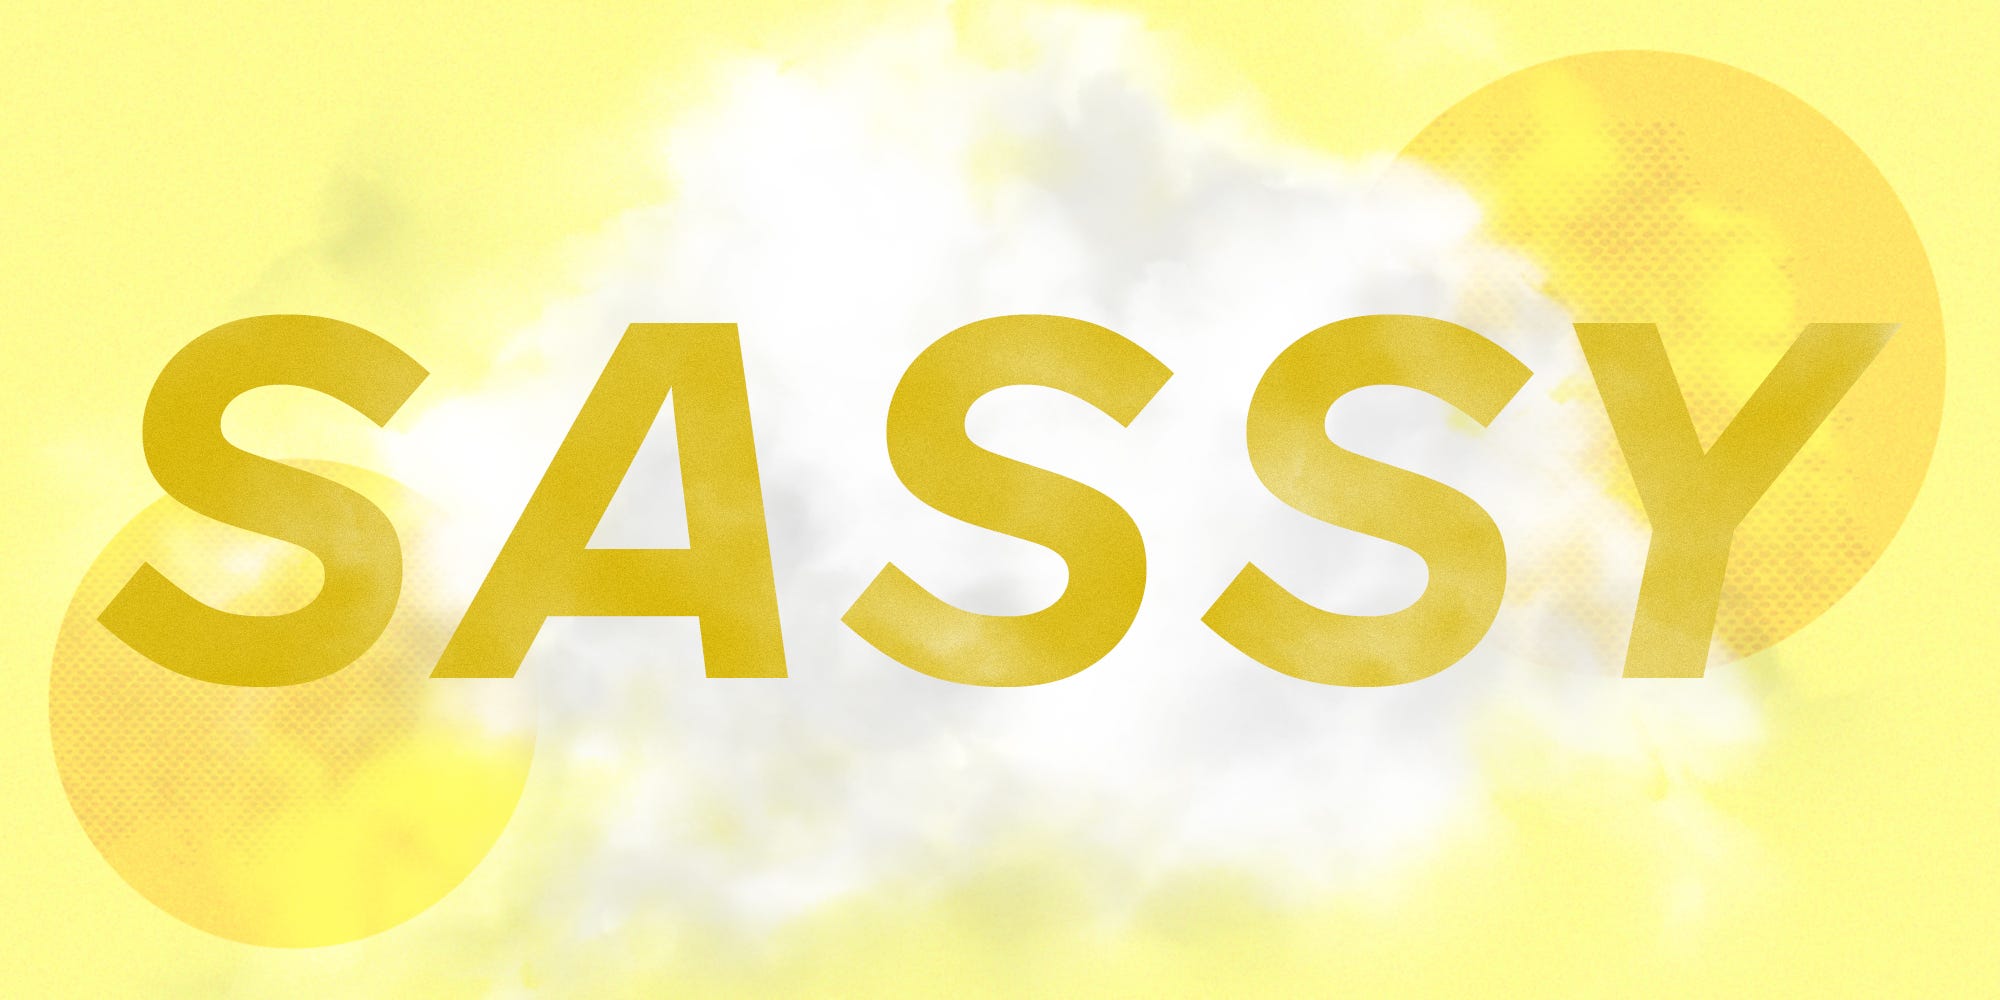 Das Wort SASSY über einer Wolke und einem gelben Hintergrund